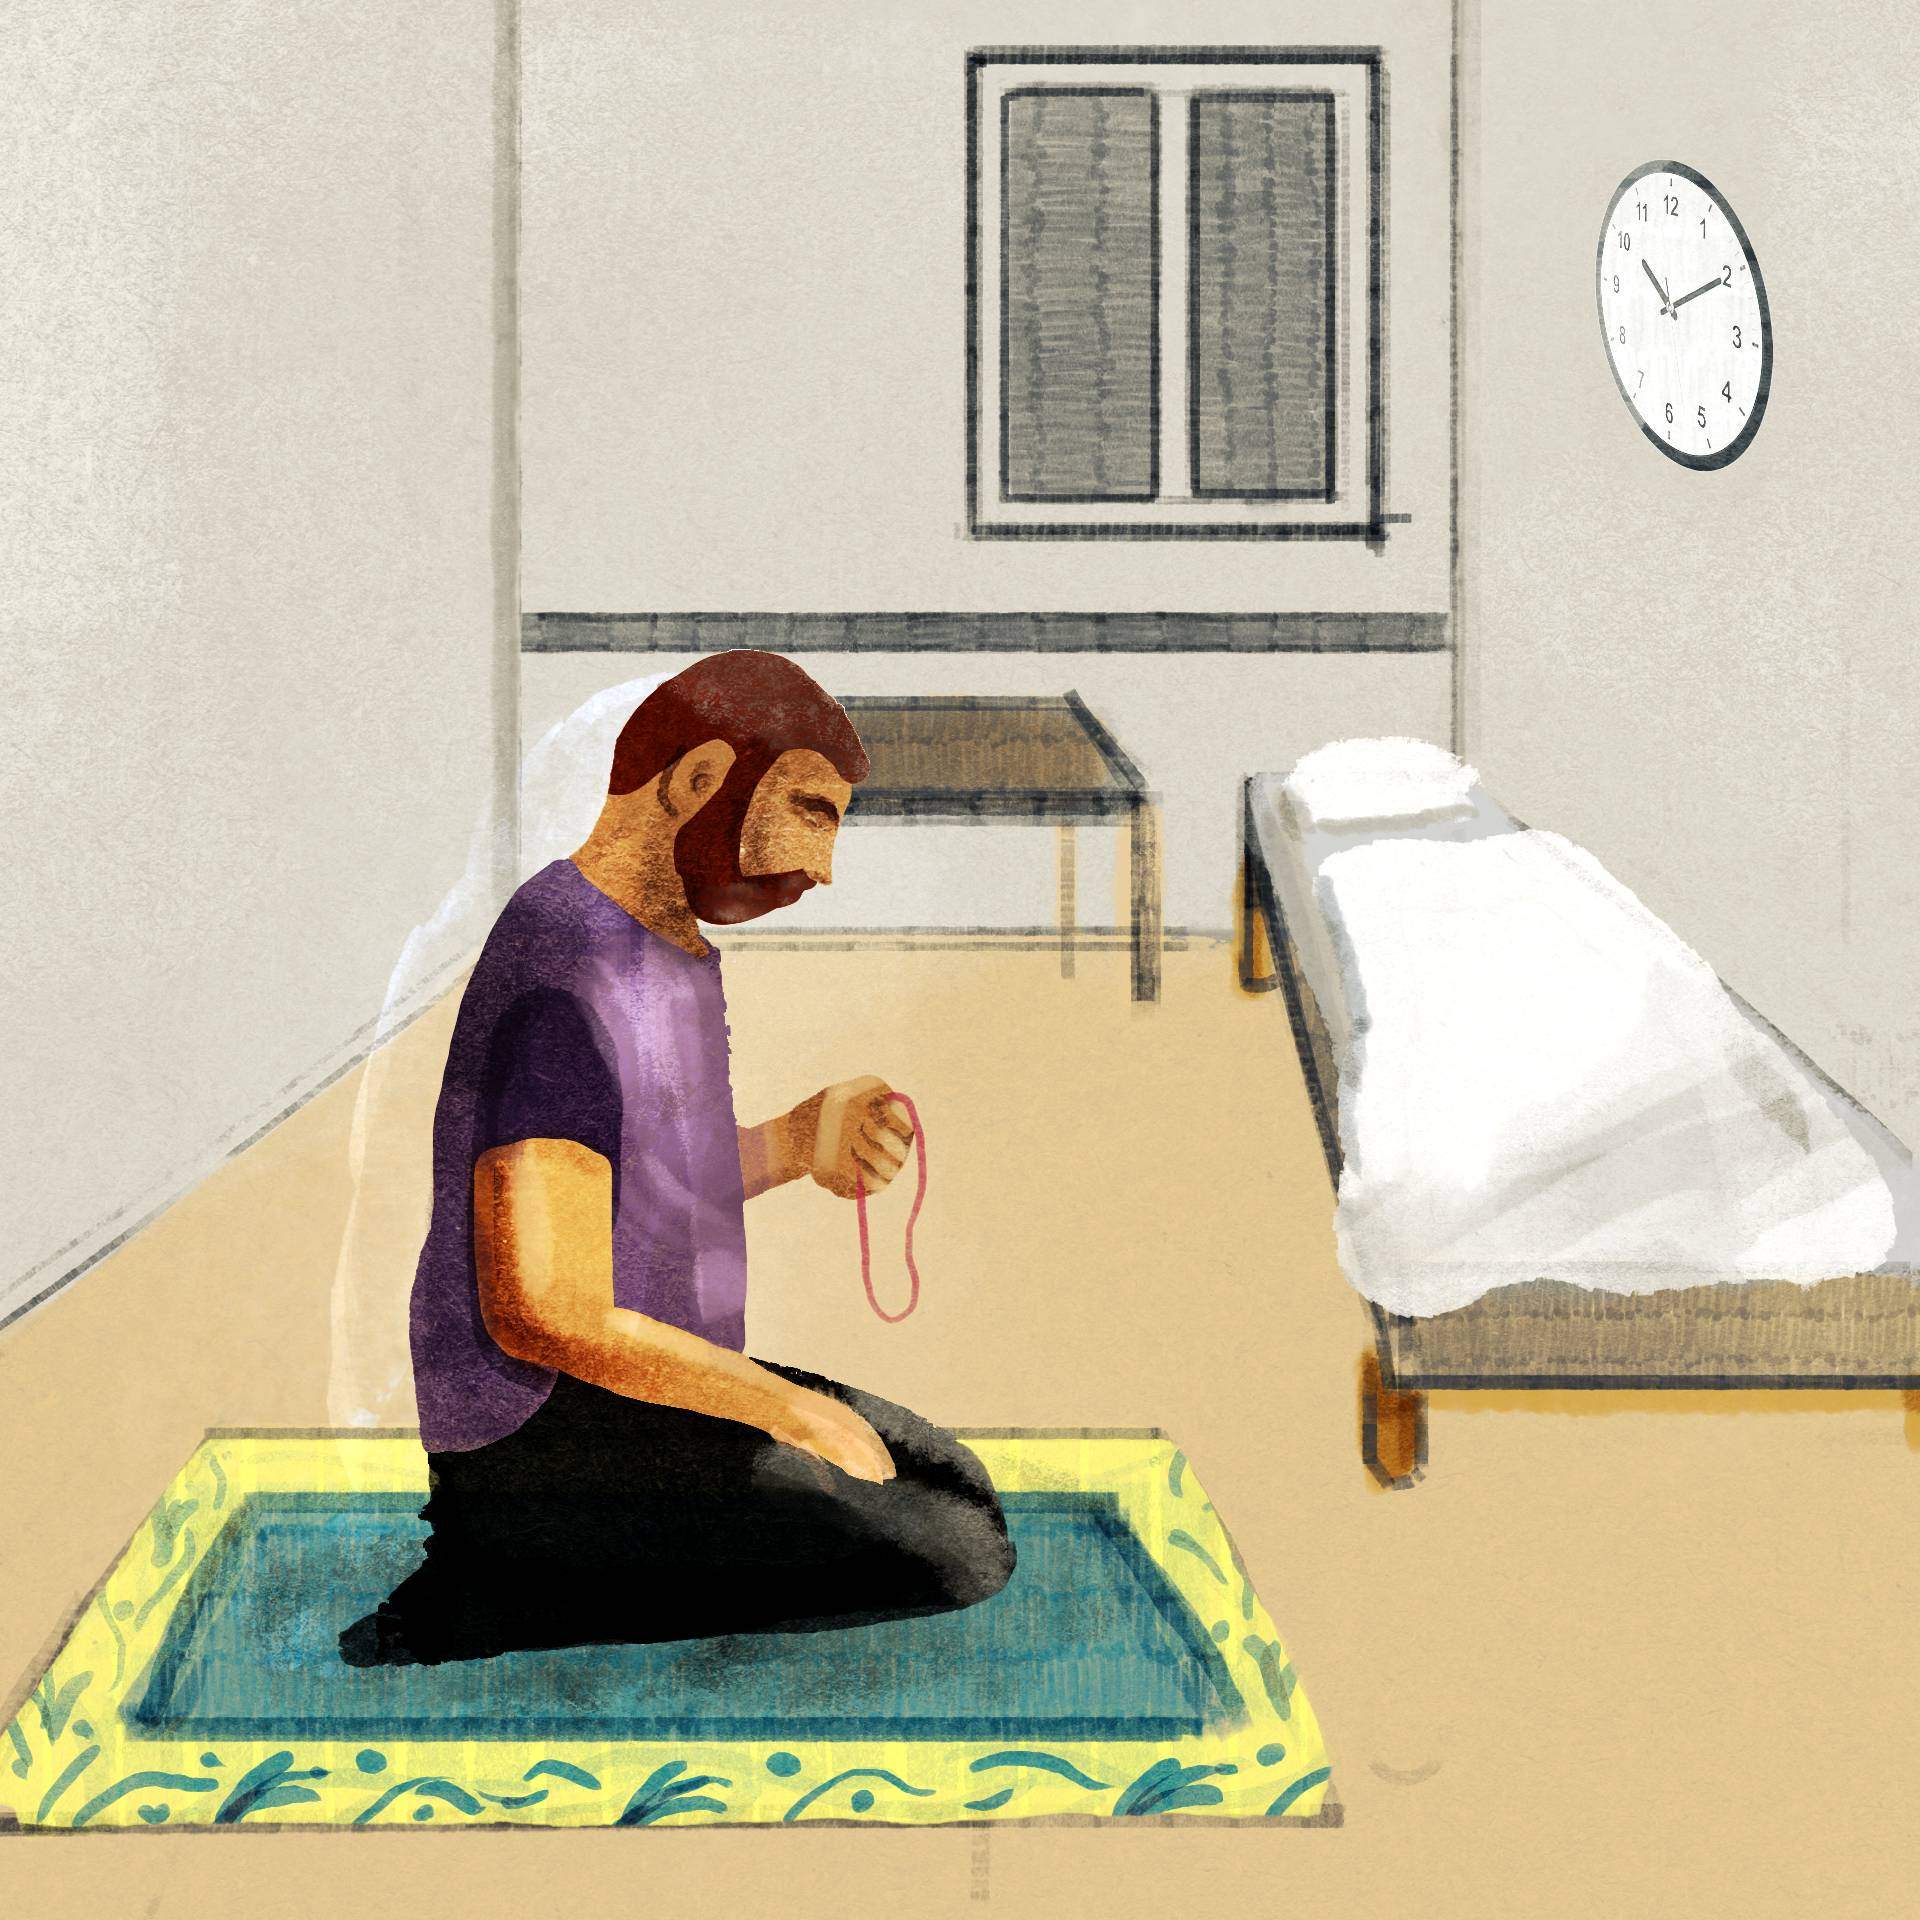 Ilustracja - mężczyzna modli się na dywaniku modlitewnym, w małym szarym pokoju z łóżkiem, stołem i zegarem